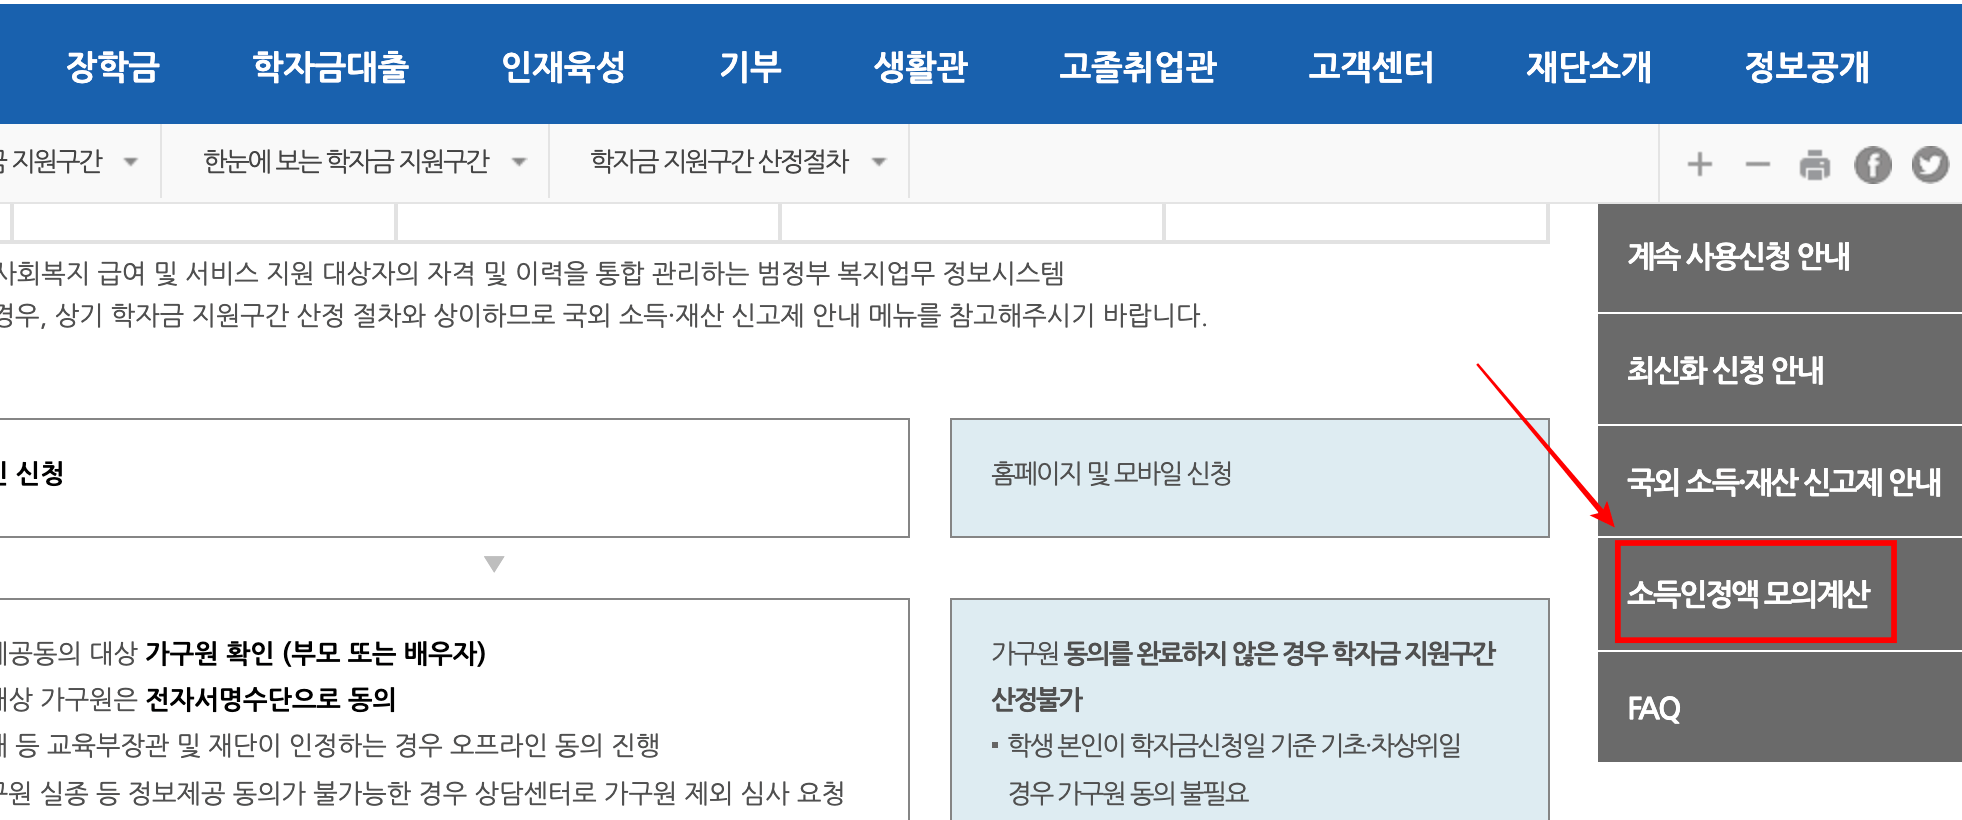 한국장학재단 소득인정액 모의계산